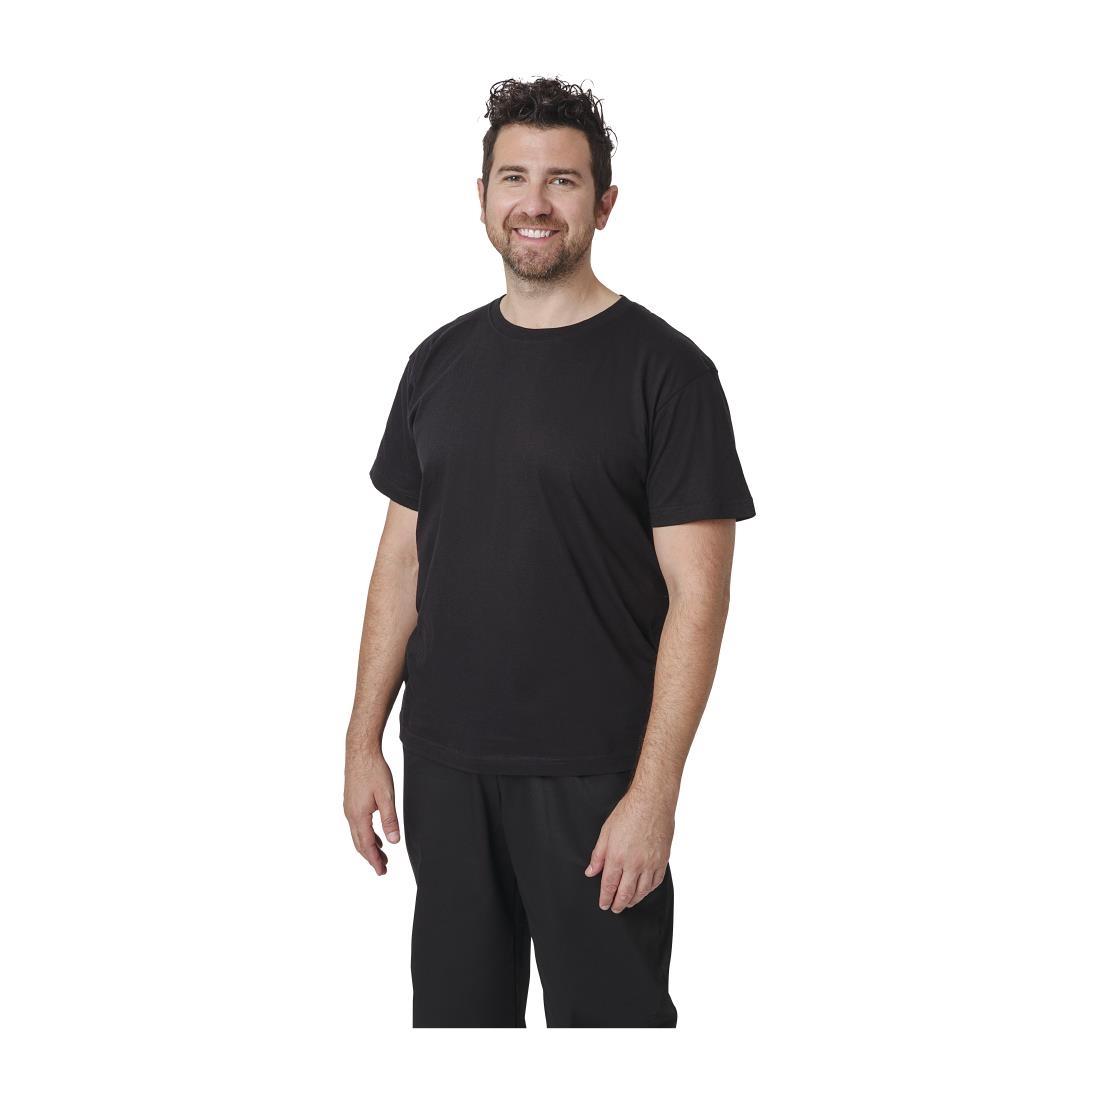 Unisex Chef T-Shirt Black M - A295-M  - 1